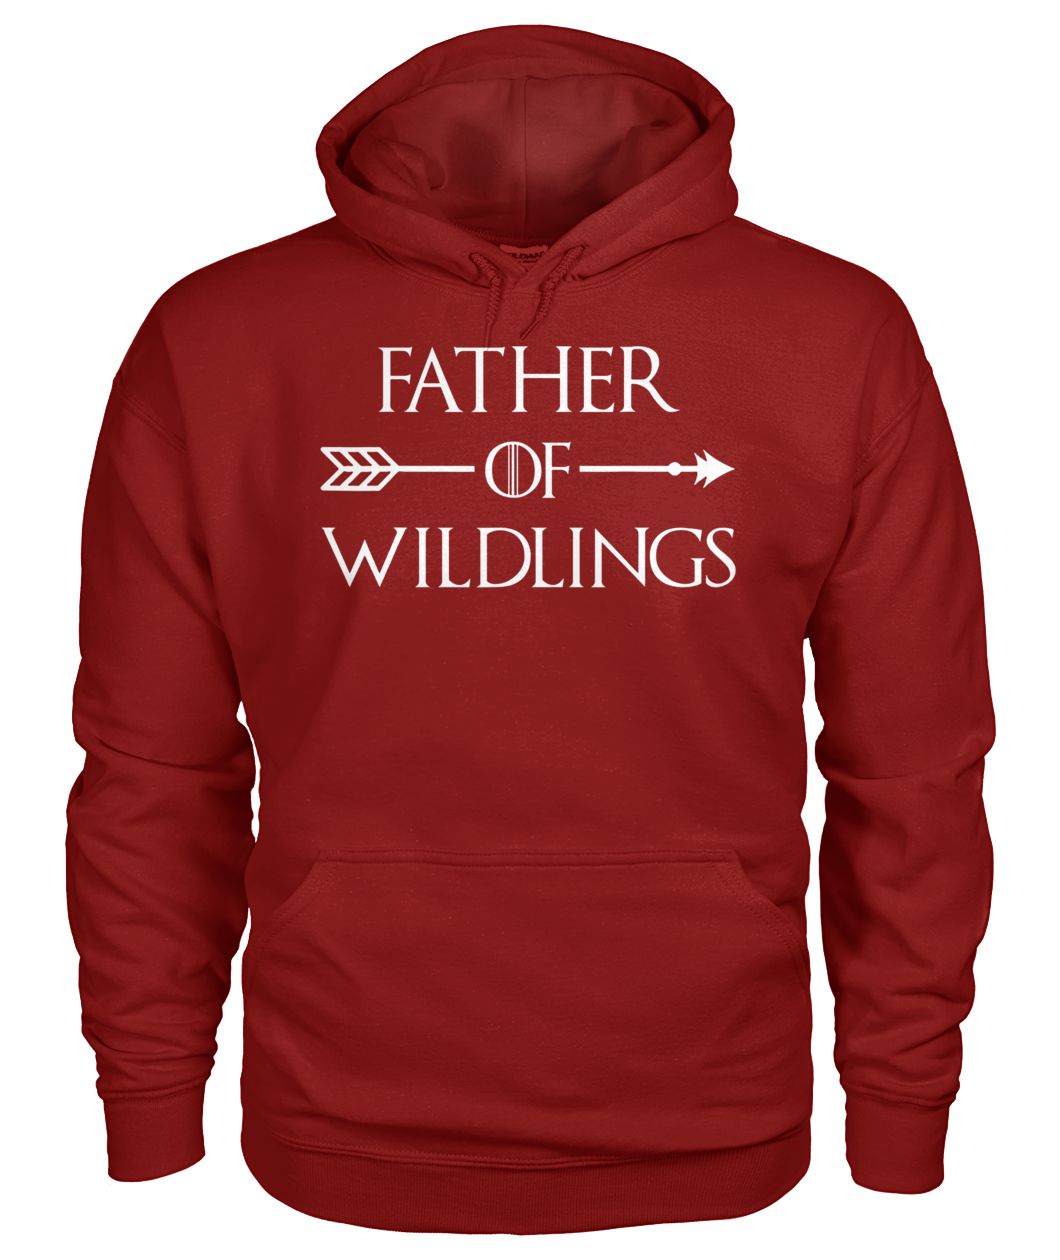 Game of thrones father of wildlings gildan hoodie